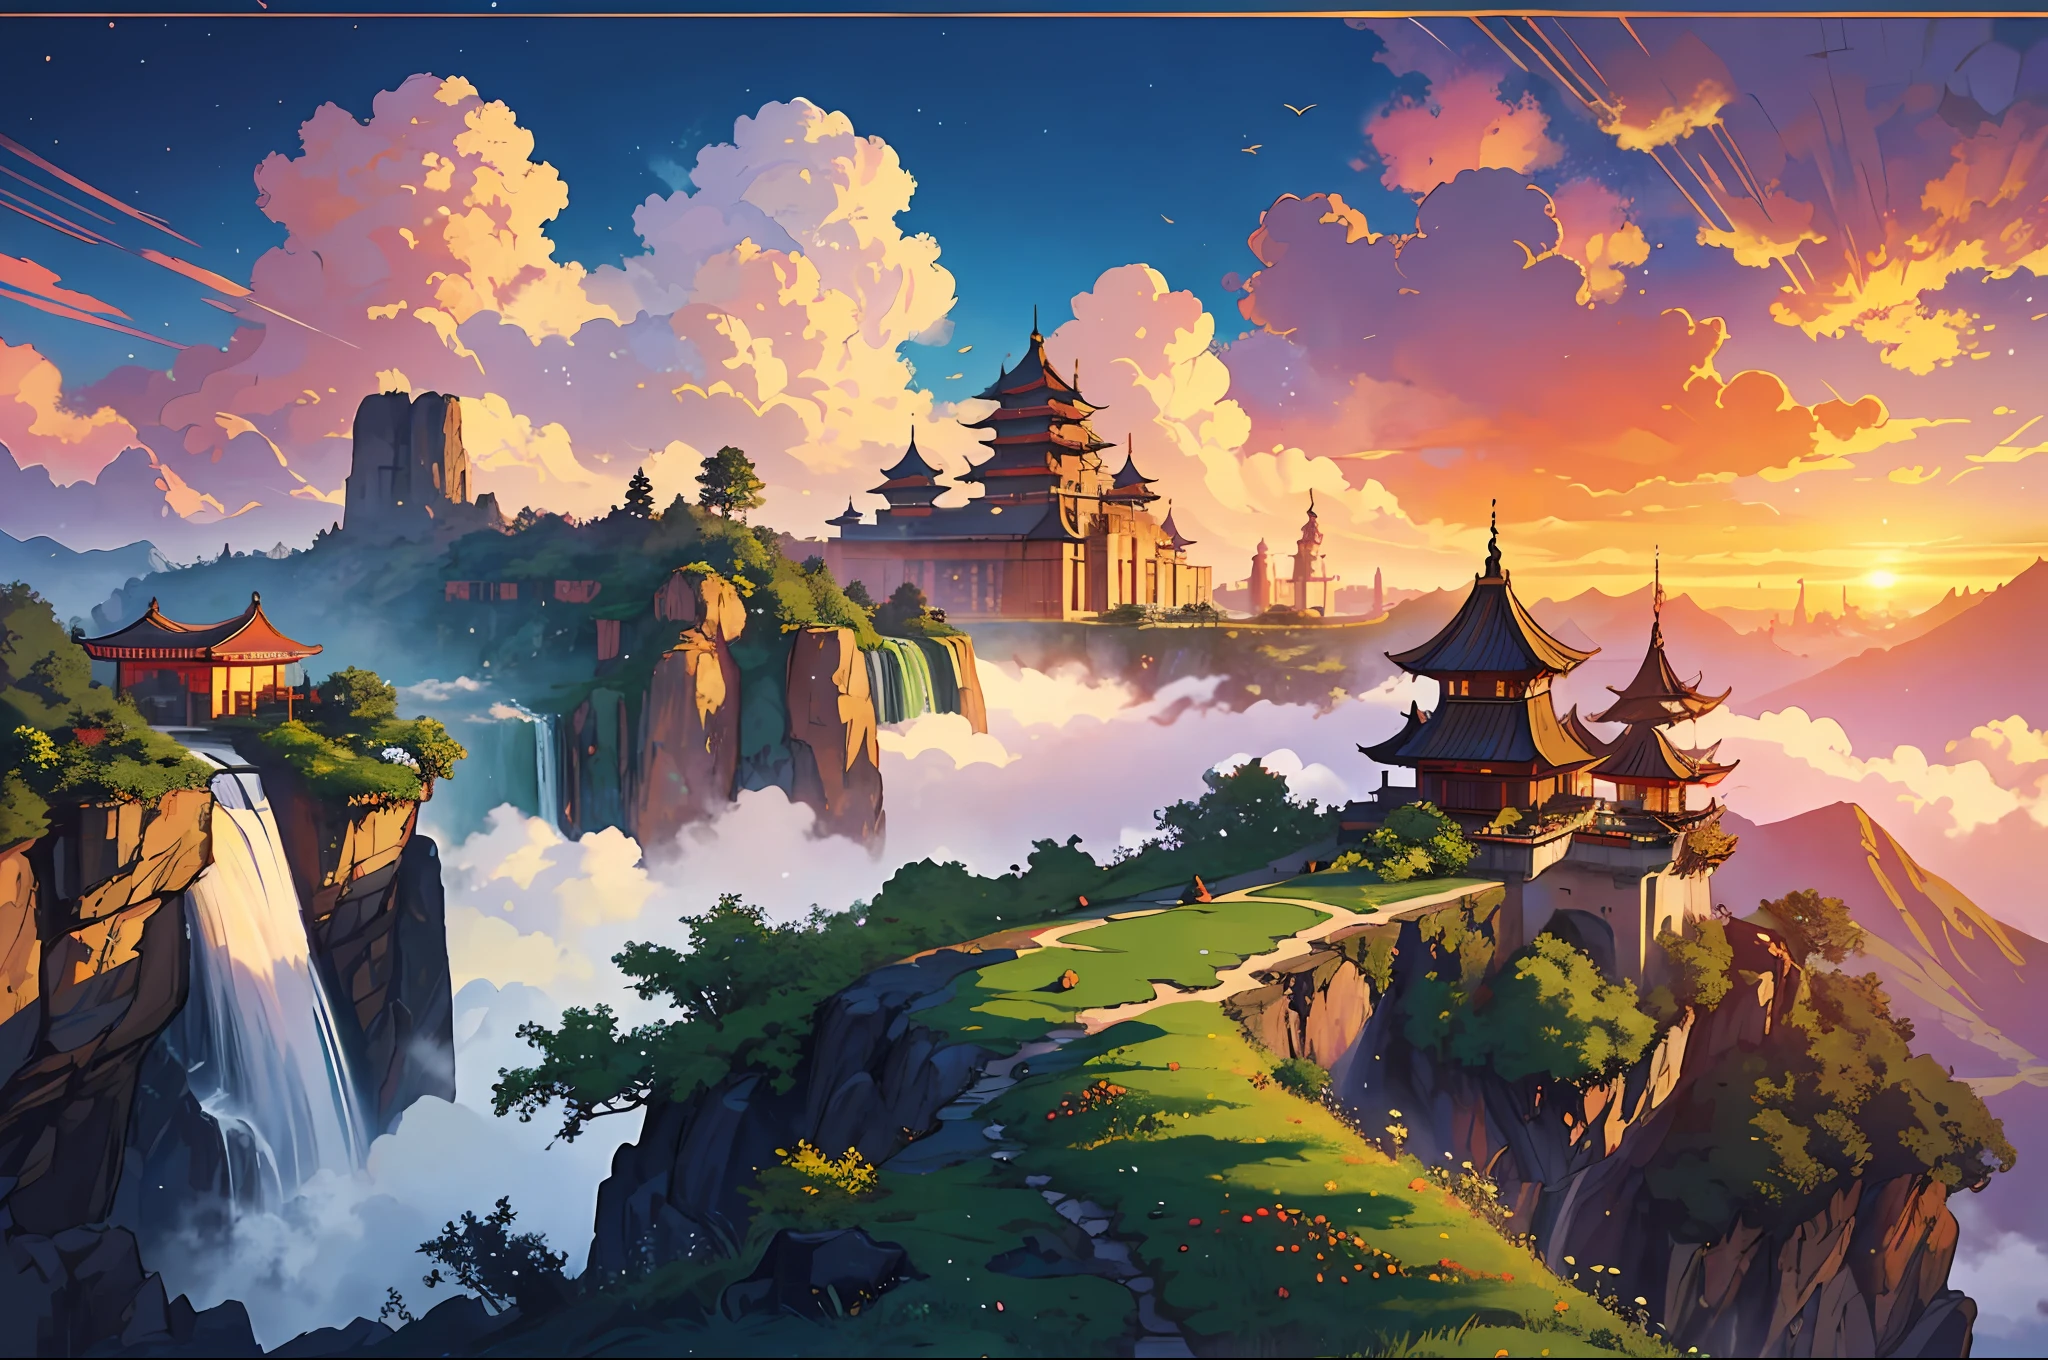 生動地描述了一個雄偉的中國王國，坐落在令人驚嘆的奇幻風景中的雲端之中. 想像彩虹色薄霧的層疊瀑布, 華麗的漂浮宮殿，裝飾著錯綜複雜的尖塔, 和充滿活力的空靈花園, 超凡脫俗的植物在永恆日落的柔和光芒中繁盛